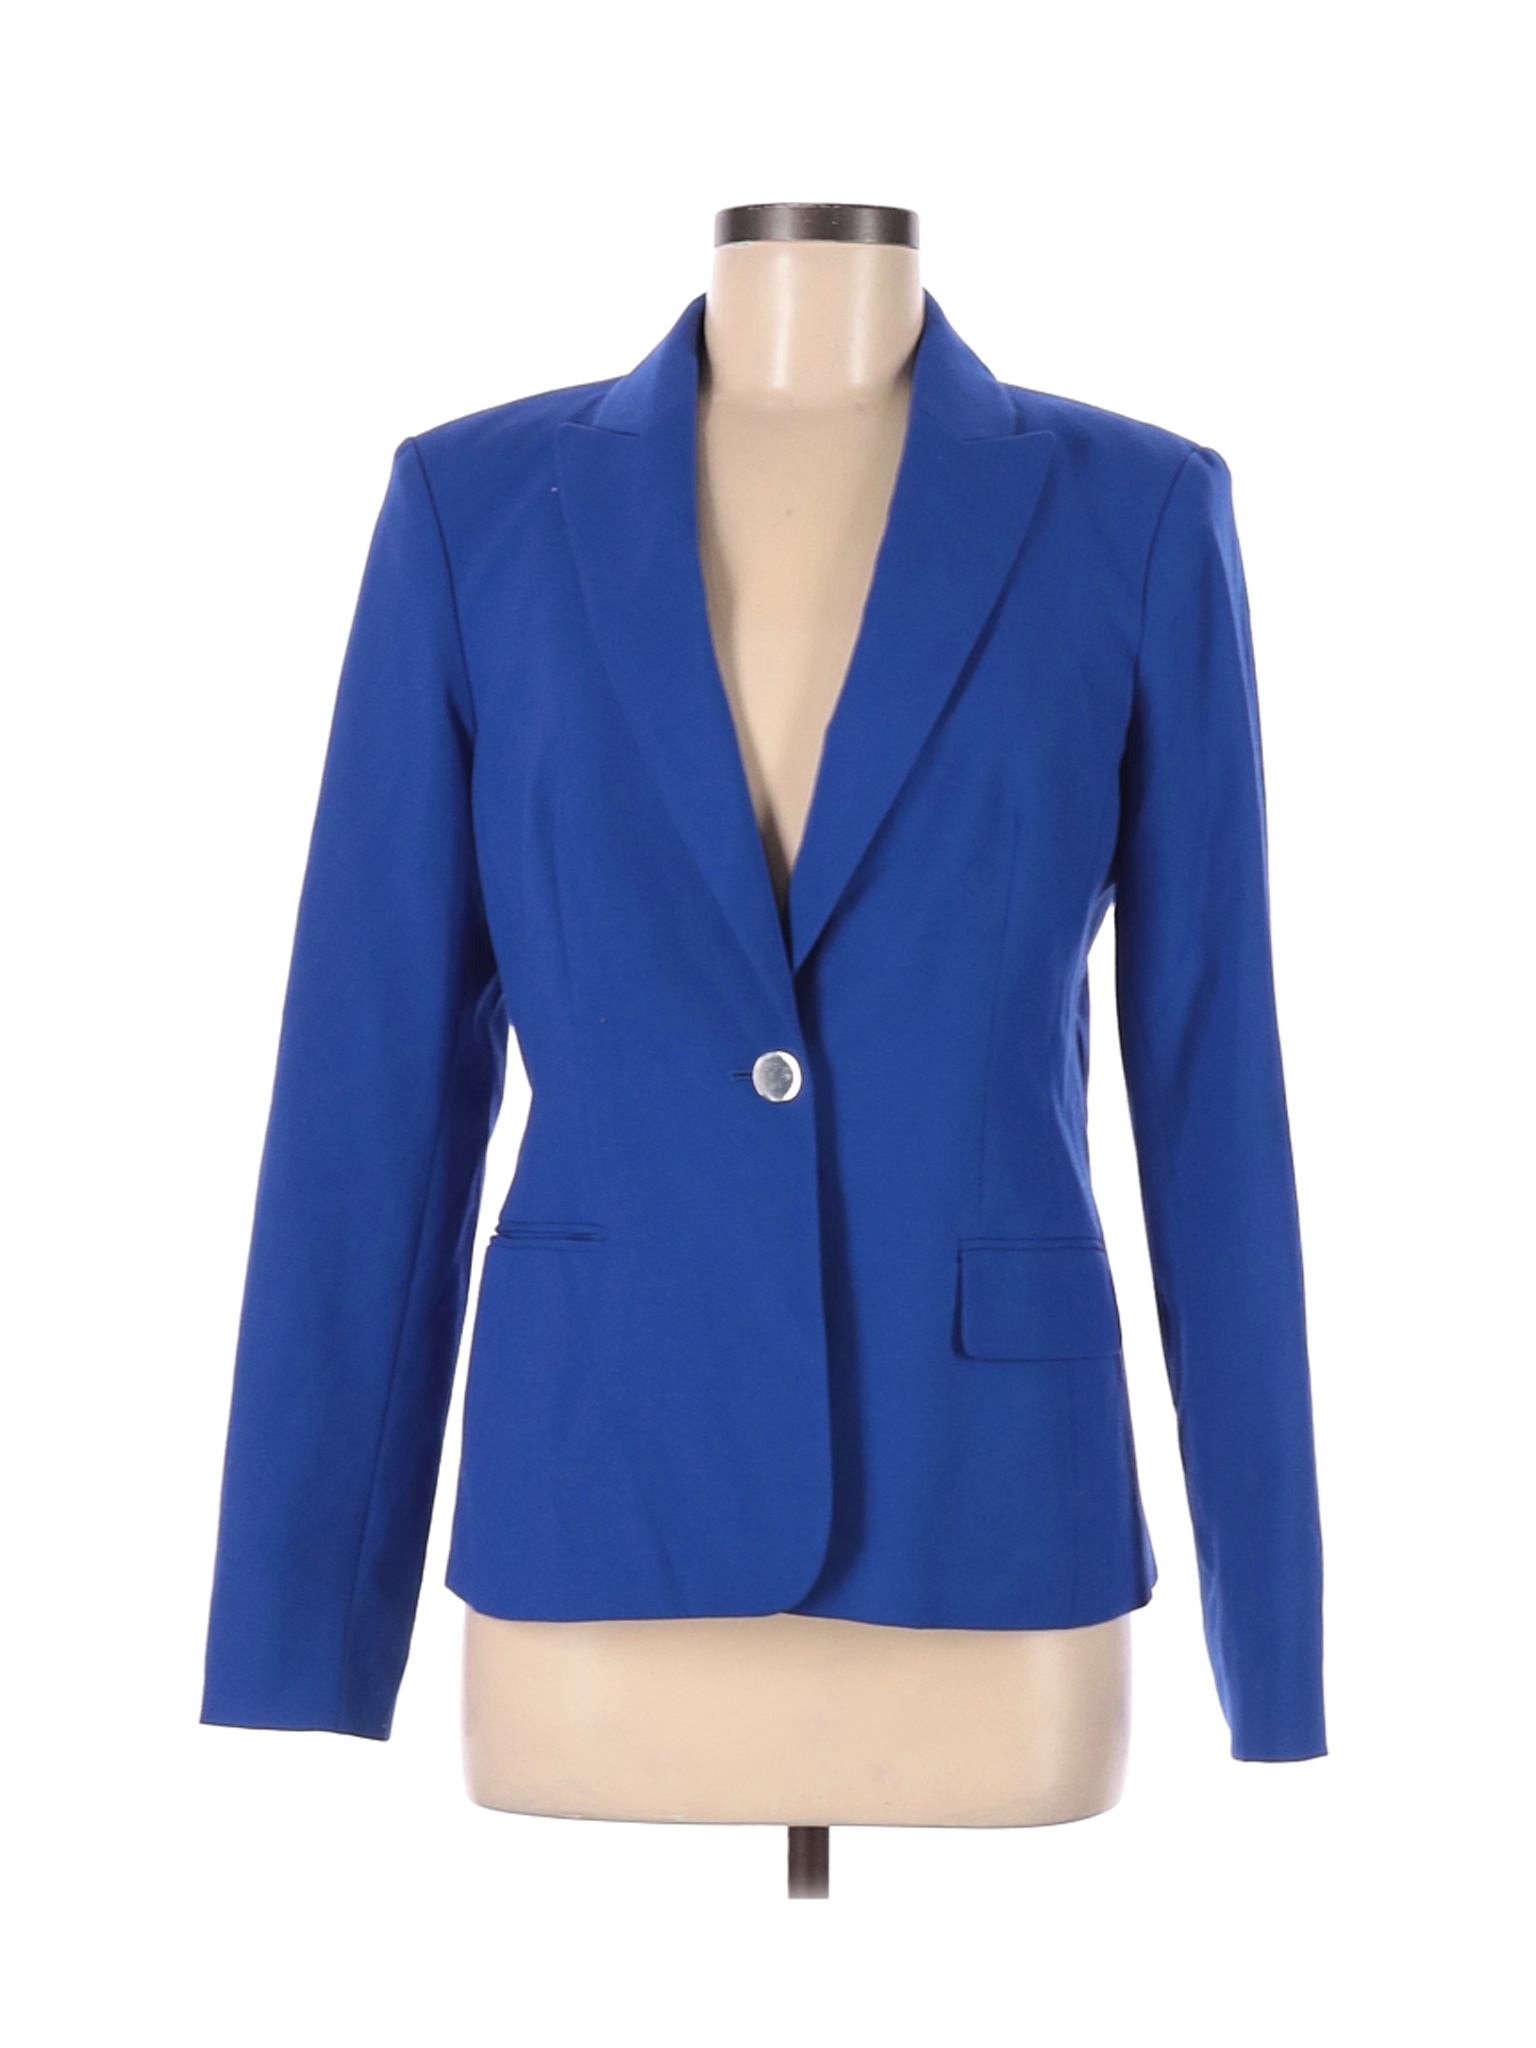 Calvin Klein Women Blue Blazer 8 | eBay